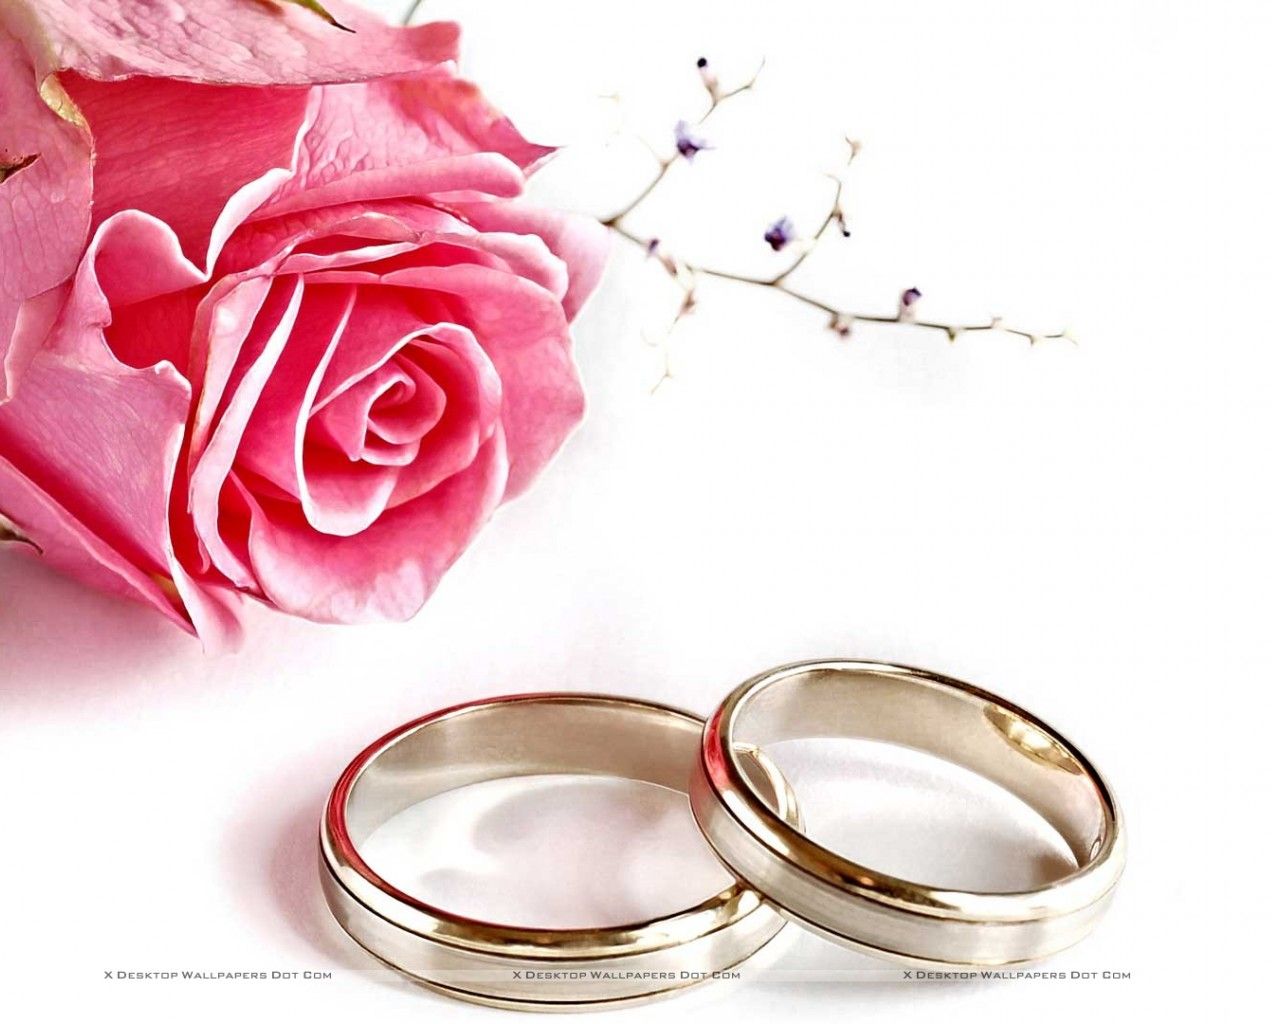 웨딩 월페이퍼 무료 다운로드,반지,결혼 반지,결혼식 공급,분홍,약혼 반지